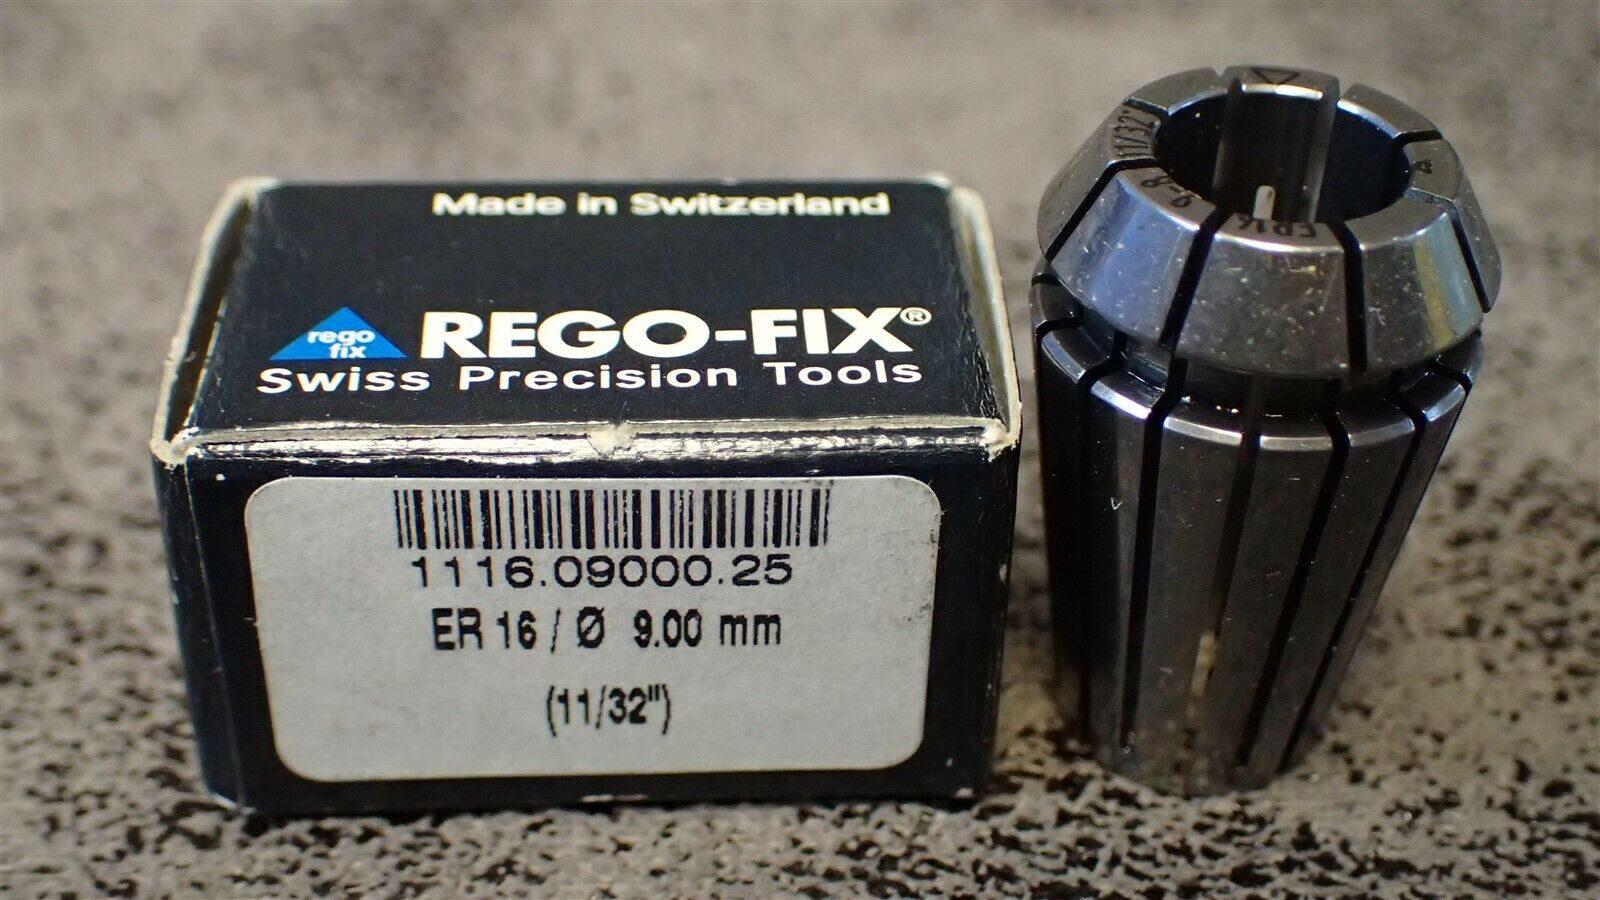 1116.09000.25 Rego-fix 9mm-8mm Er16 Standard Cooling Collet, 11/32", .3543-.315"